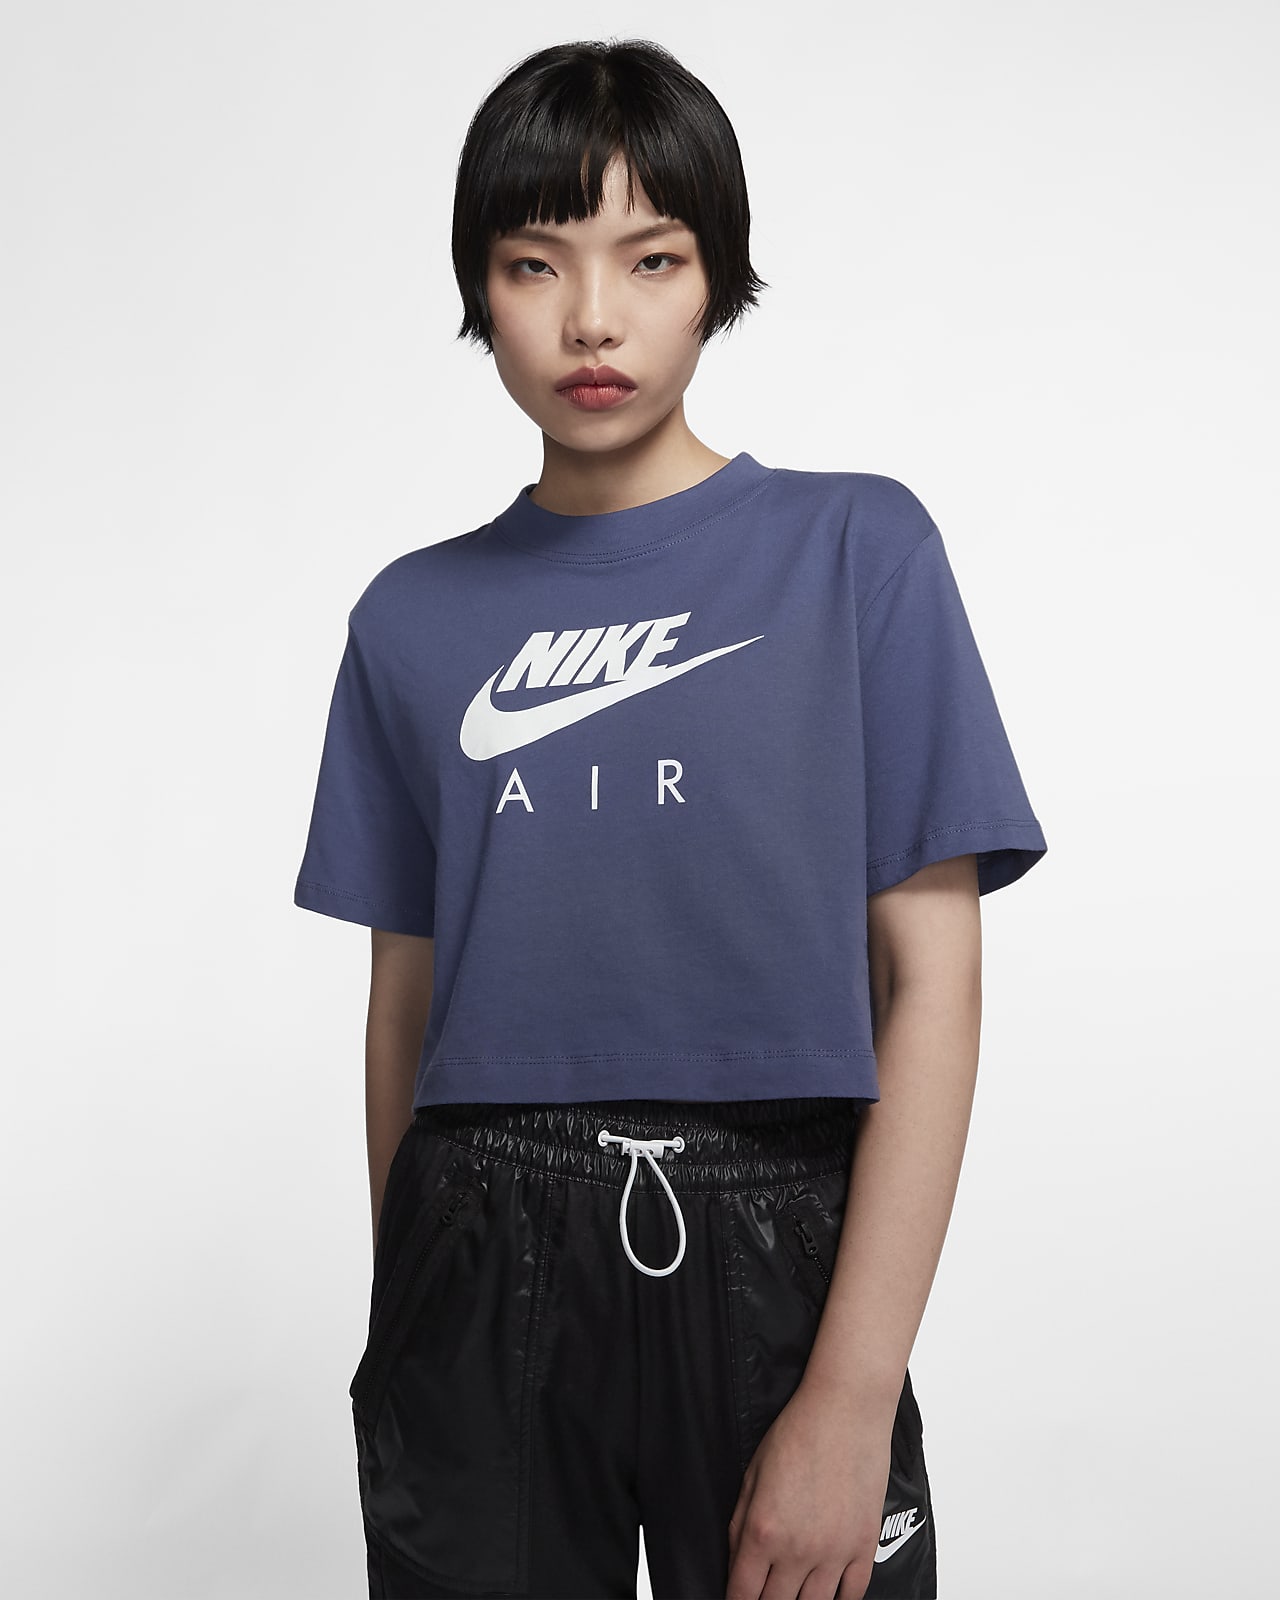 Nike Air 女子短袖上衣-耐克(Nike)中国官网